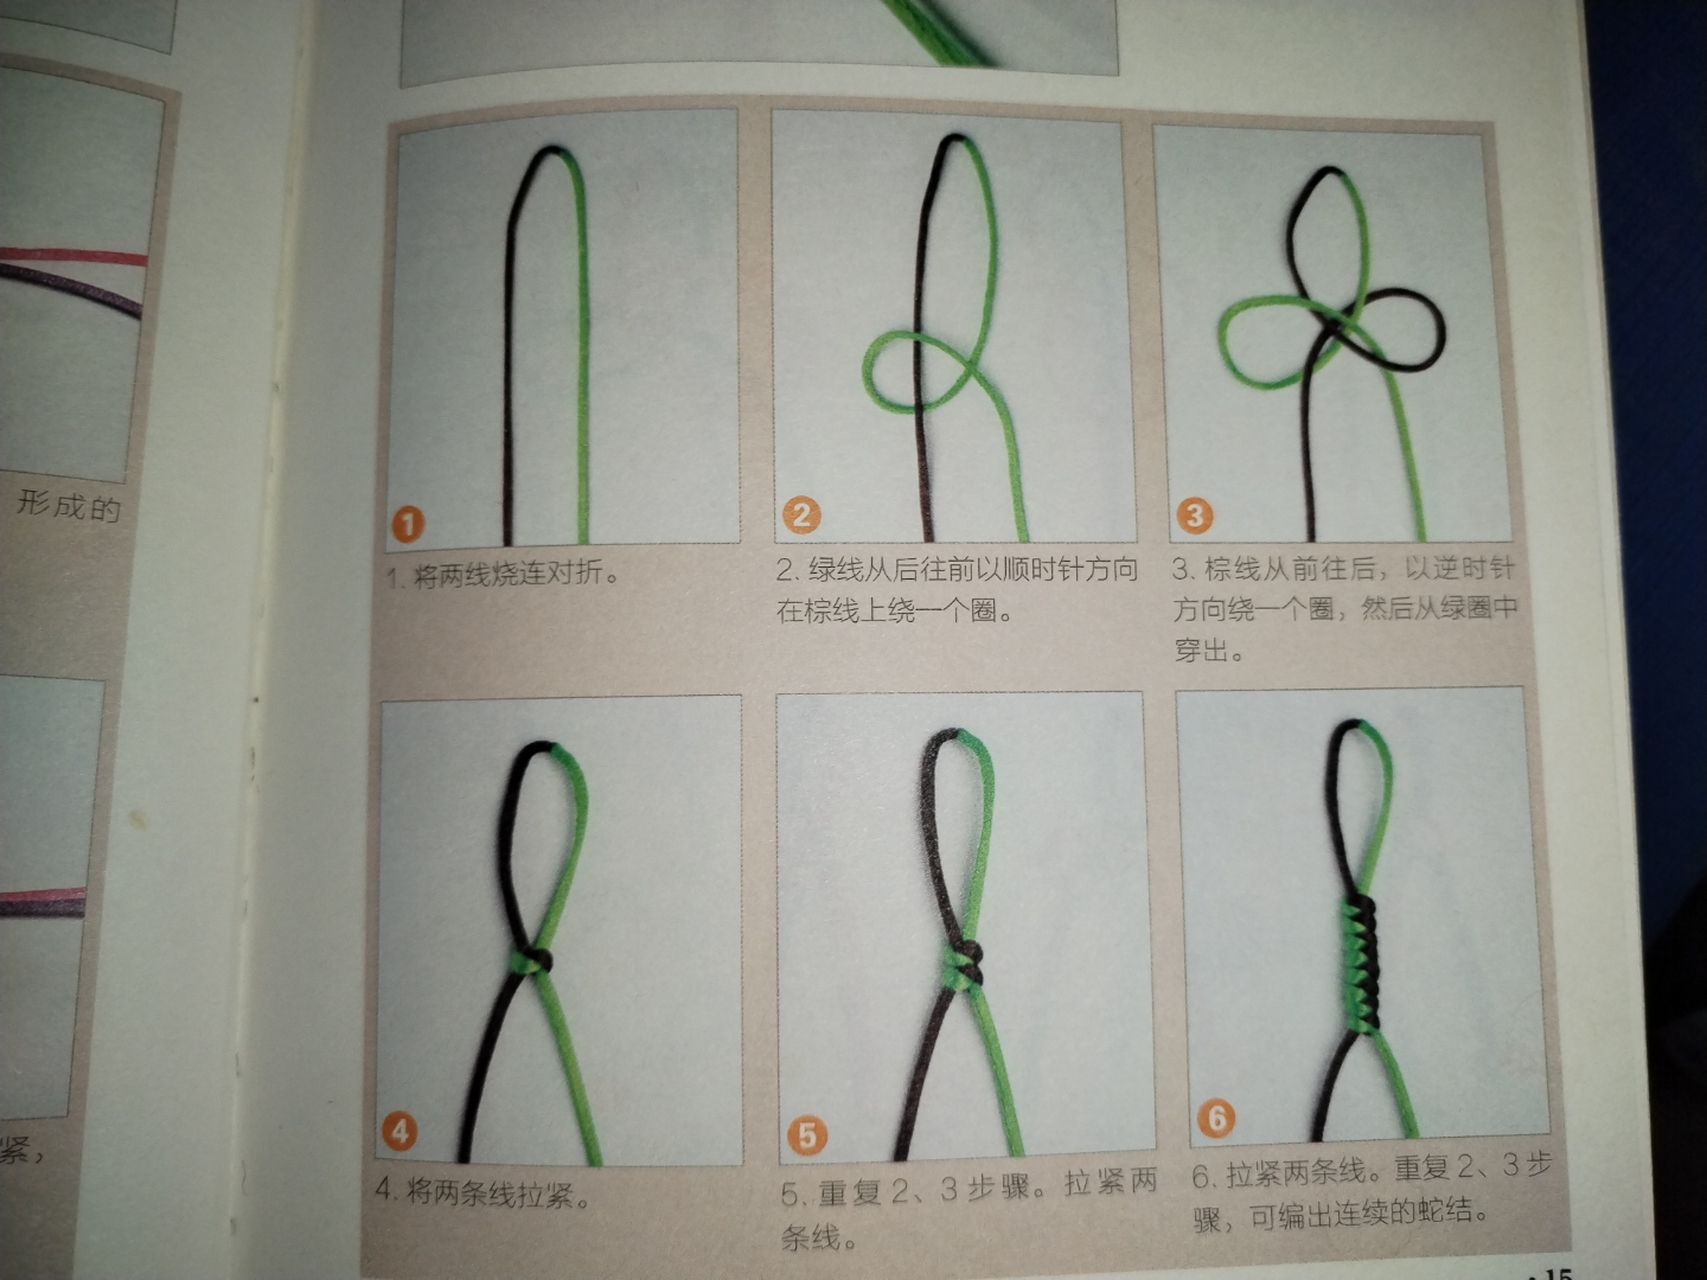 蛇结 蛇结是日常编绳中最常用的绳结之一